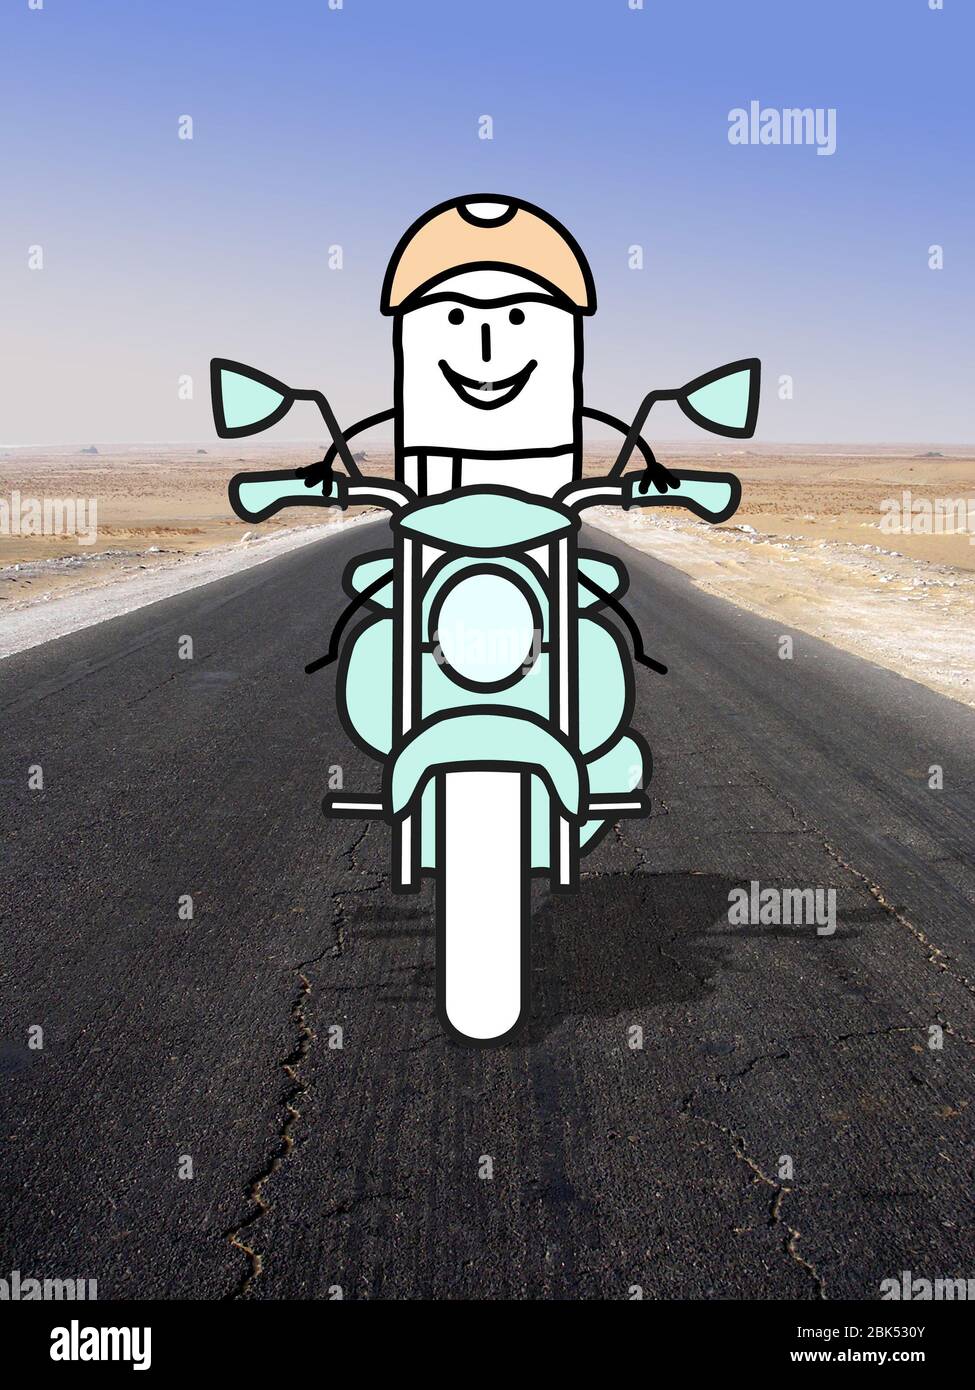 un pilote de moto dessinée à la main qui nous fait face, seul sur une photo de route du désert Banque D'Images